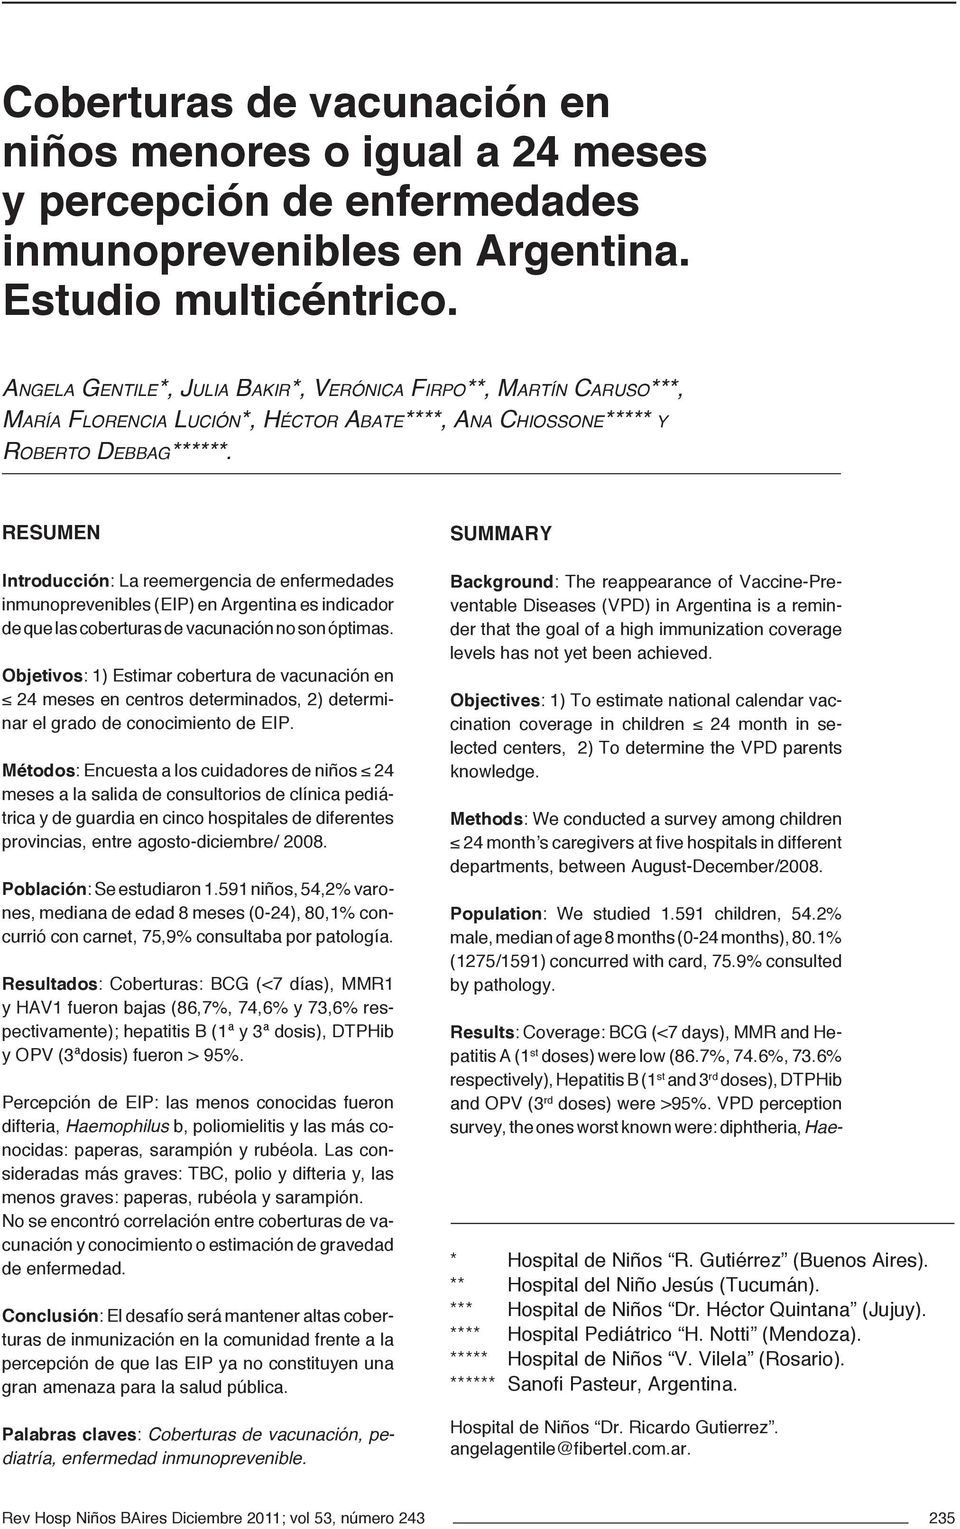 REsumEn Introducción: La reemergencia de enfermedades inmunoprevenibles (EIP) en Argentina es indicador de que las coberturas de vacunación no son óptimas.